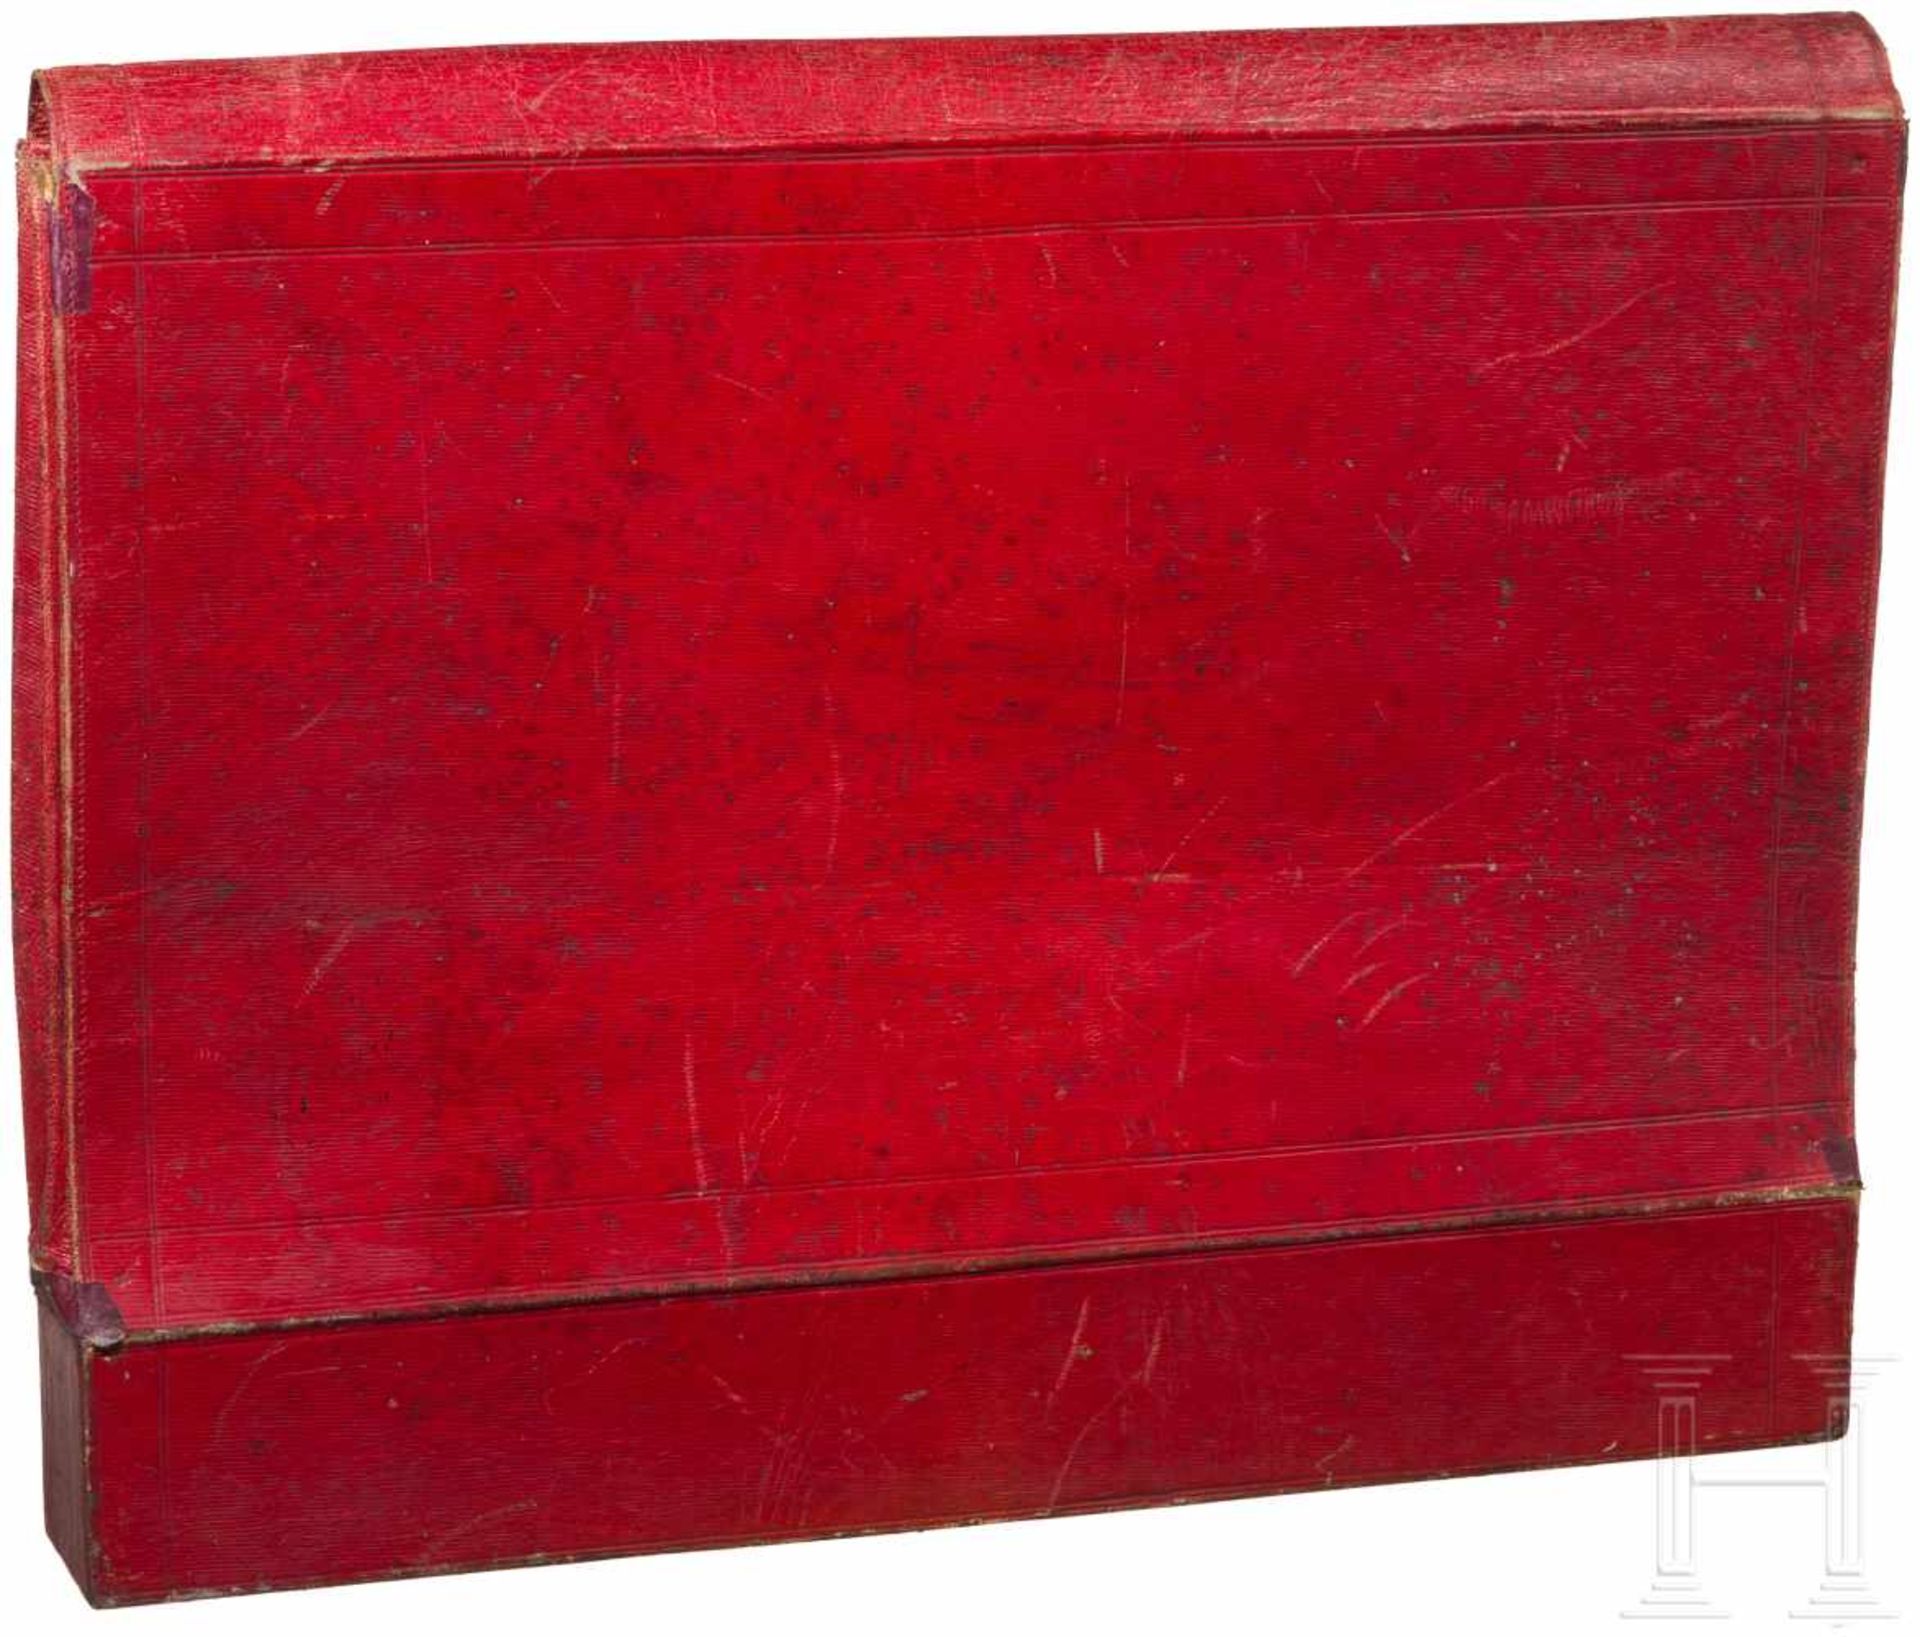 Dokumententasche aus rotem Leder, mglw. Russland, 1. Drittel 19. Jhdt.Weinrotes Maroquinleder, innen - Bild 3 aus 3